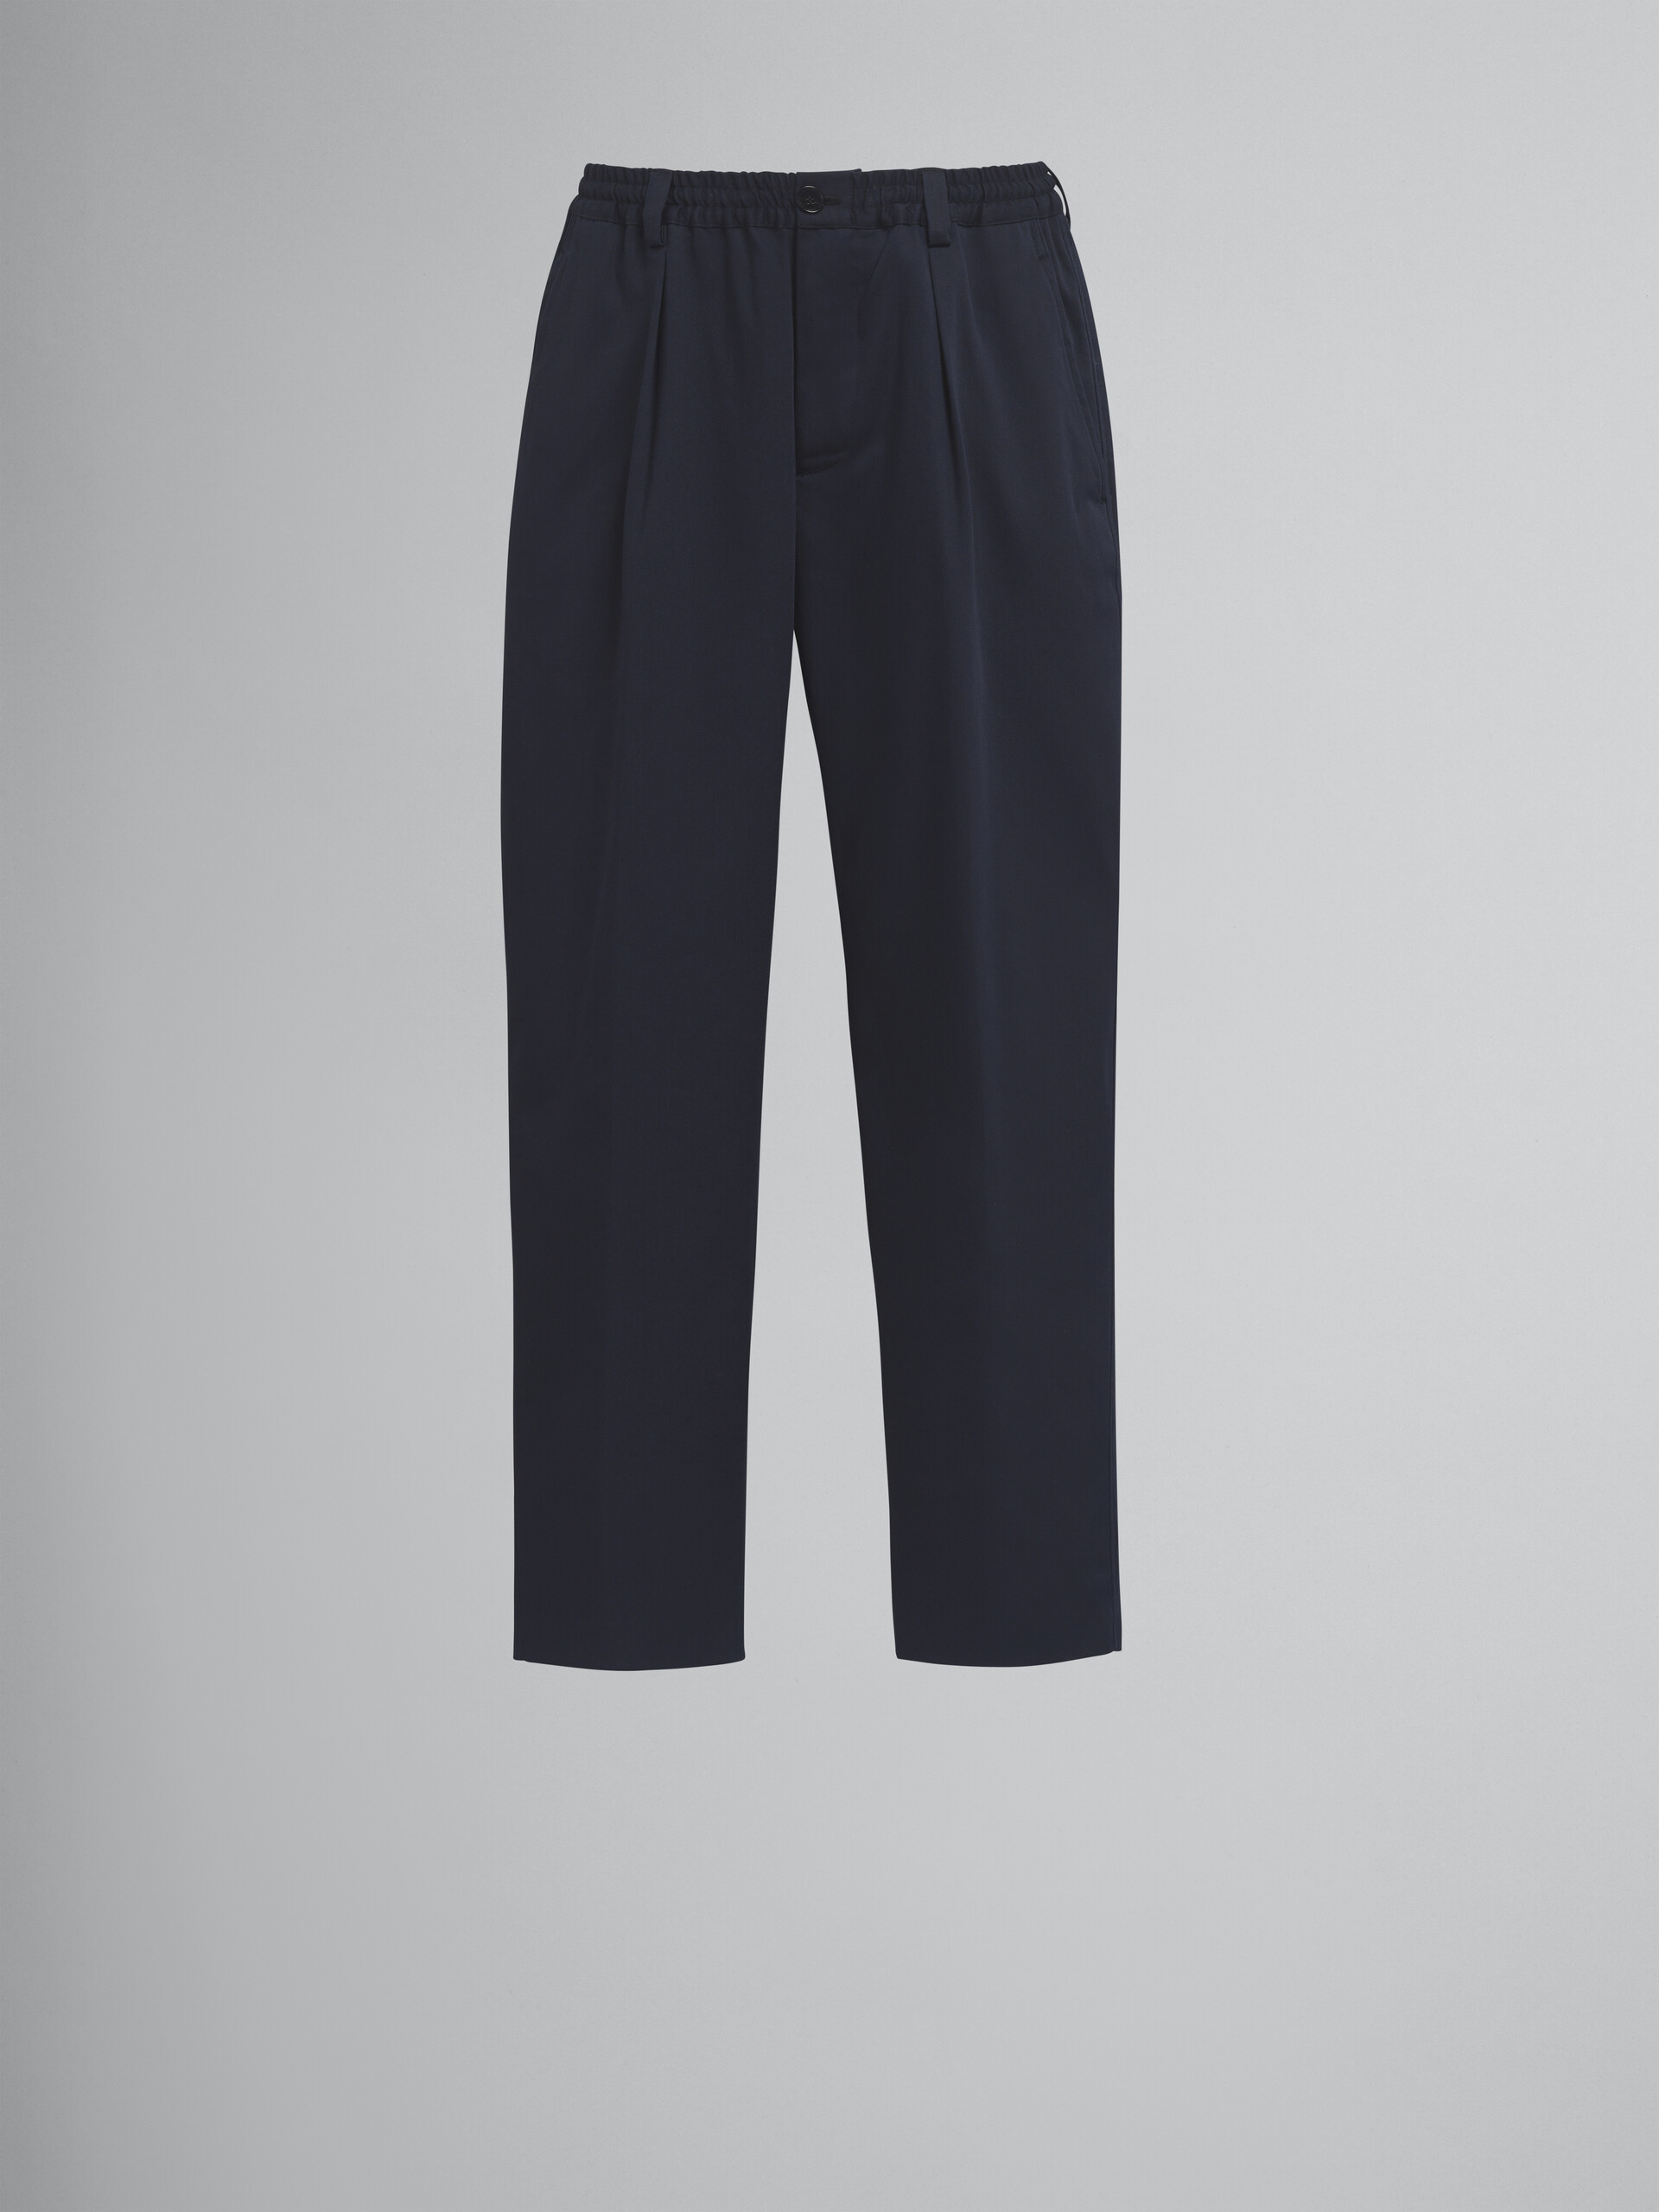 Blue cotton gabardine pants - Pants - Image 1